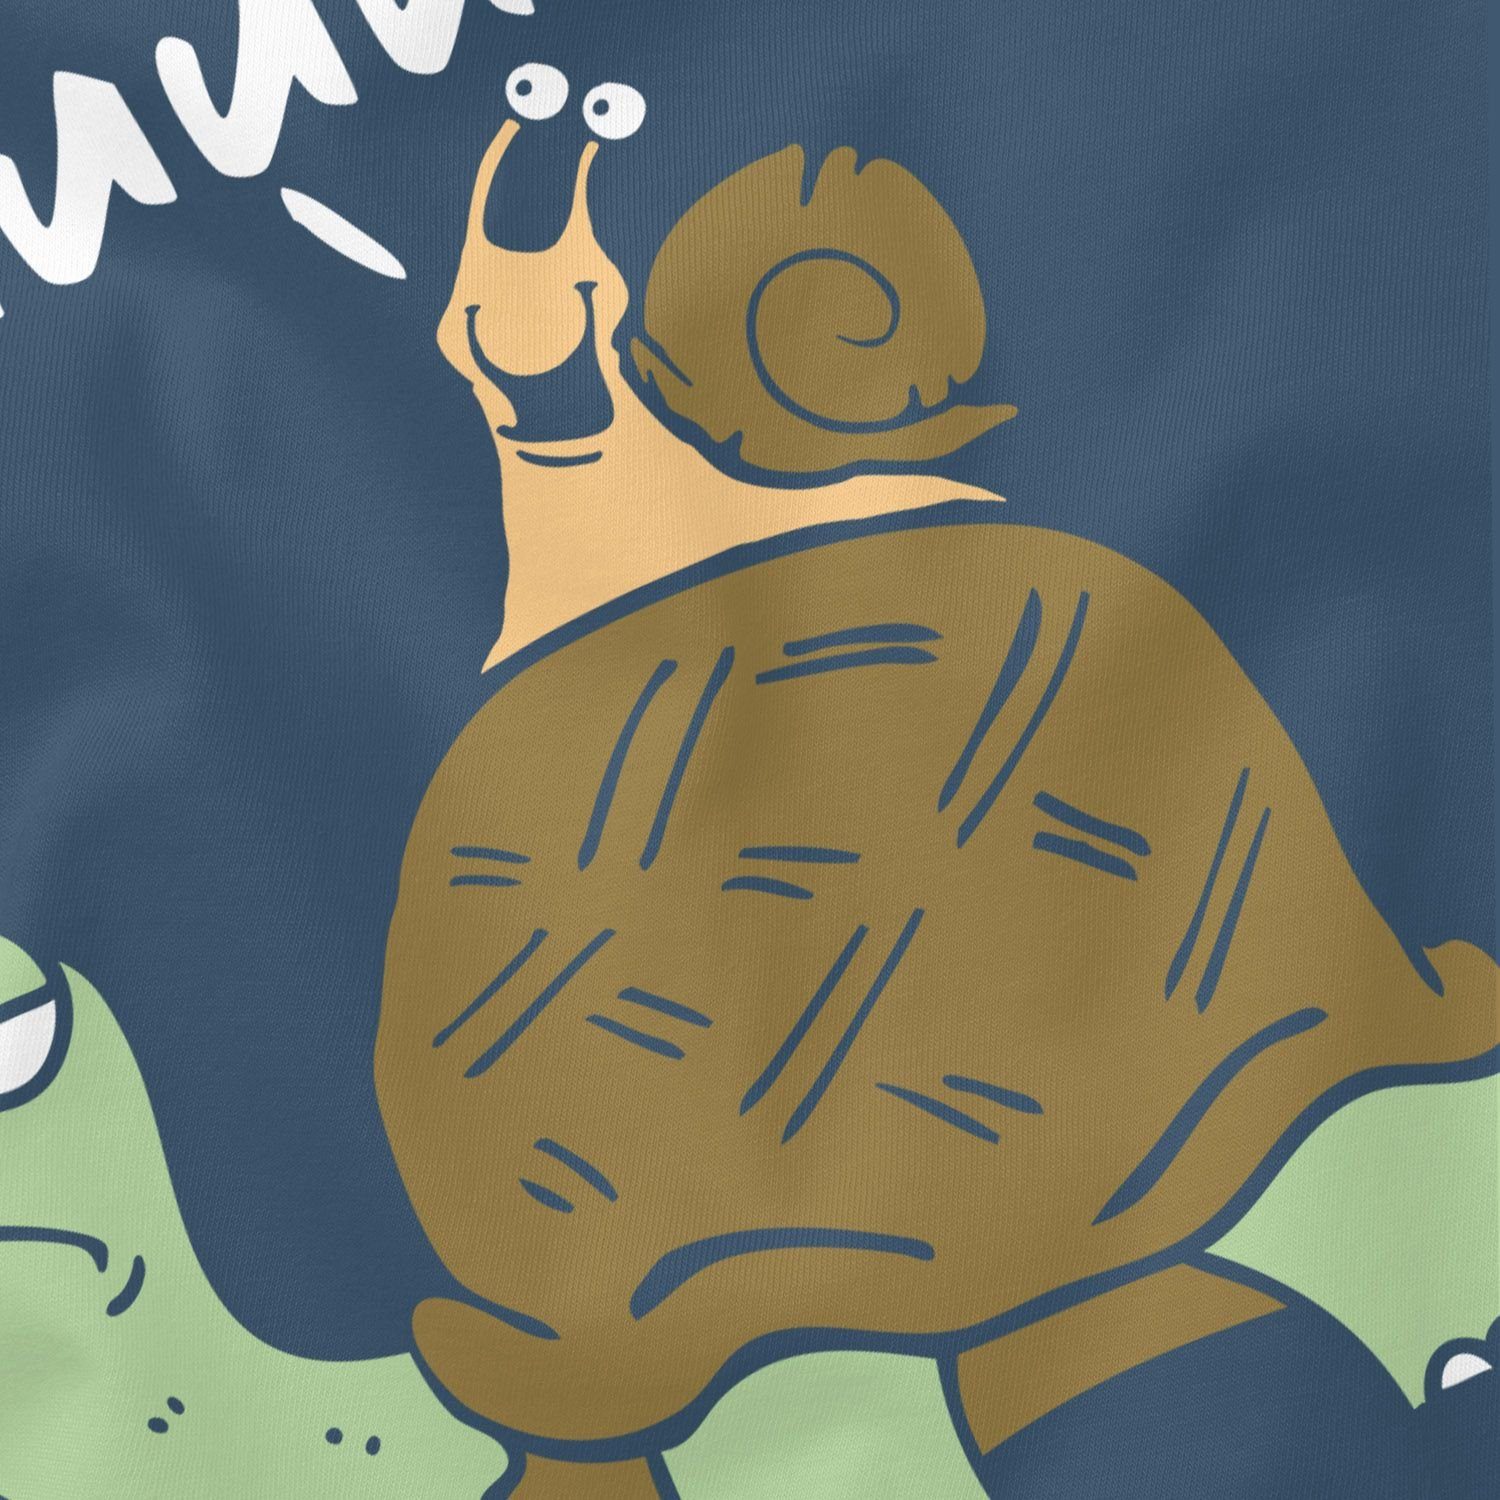 MoonWorks Print-Shirt Herren Schildkröte Comic blau lustig mit Fun-Shirt Moonworks® Spruch T-Shirt Scherz Lustig Huuuuiiii Schnecke Witzig Print